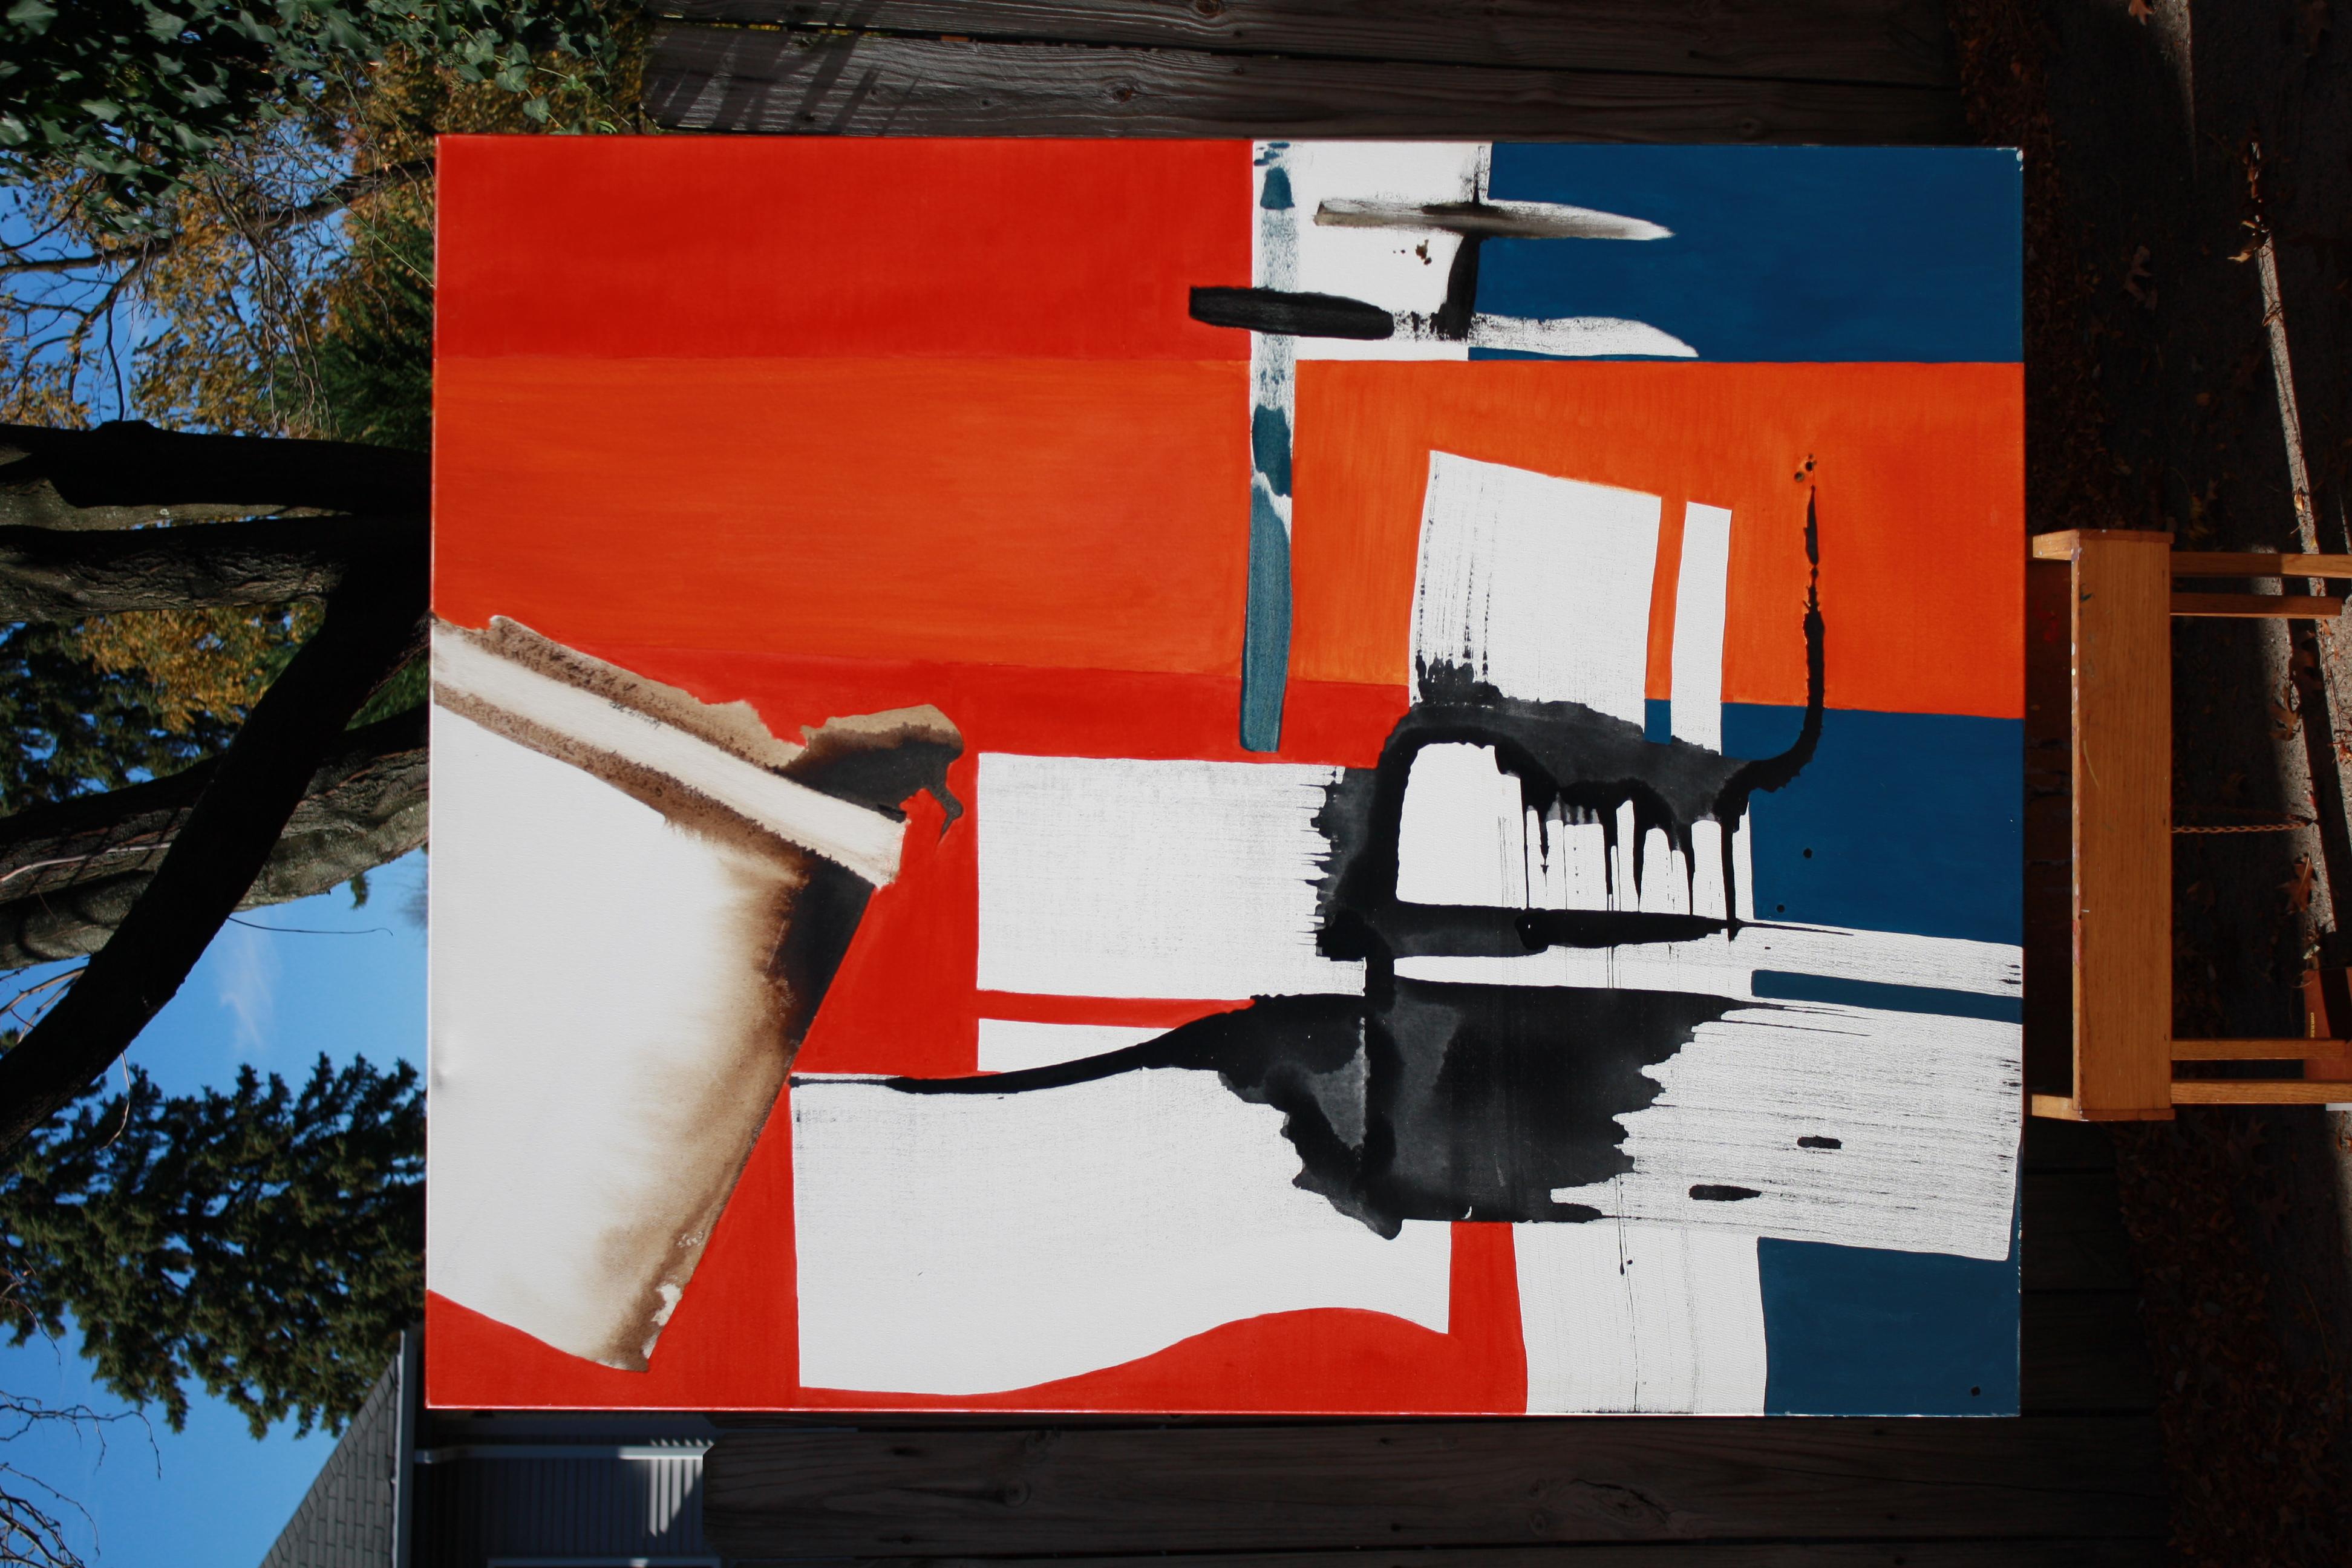 <p>Commentaires de l'artisteL'artiste Roman Antopolsky crée une abstraction contrastée entre trois couleurs unies.<br /> Des structures de rouge, de bleu et de brun prennent forme dans la composition. La toile explore le poids exercé par des traits